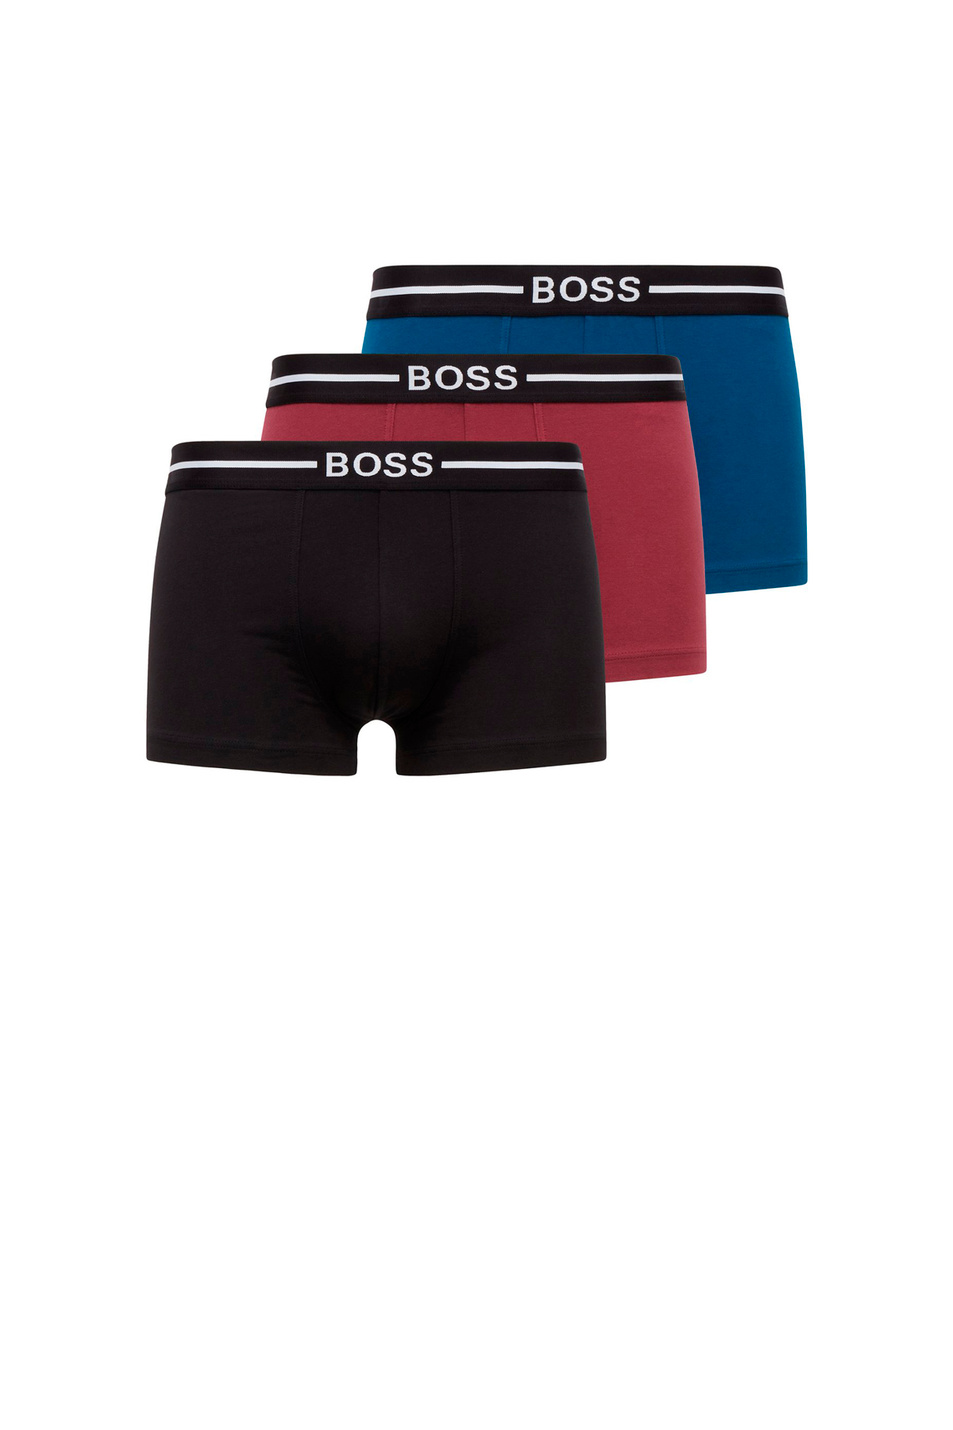 BOSS Комплект трусов-боксеров из эластичного хлопка (цвет ), артикул 50460261 | Фото 1